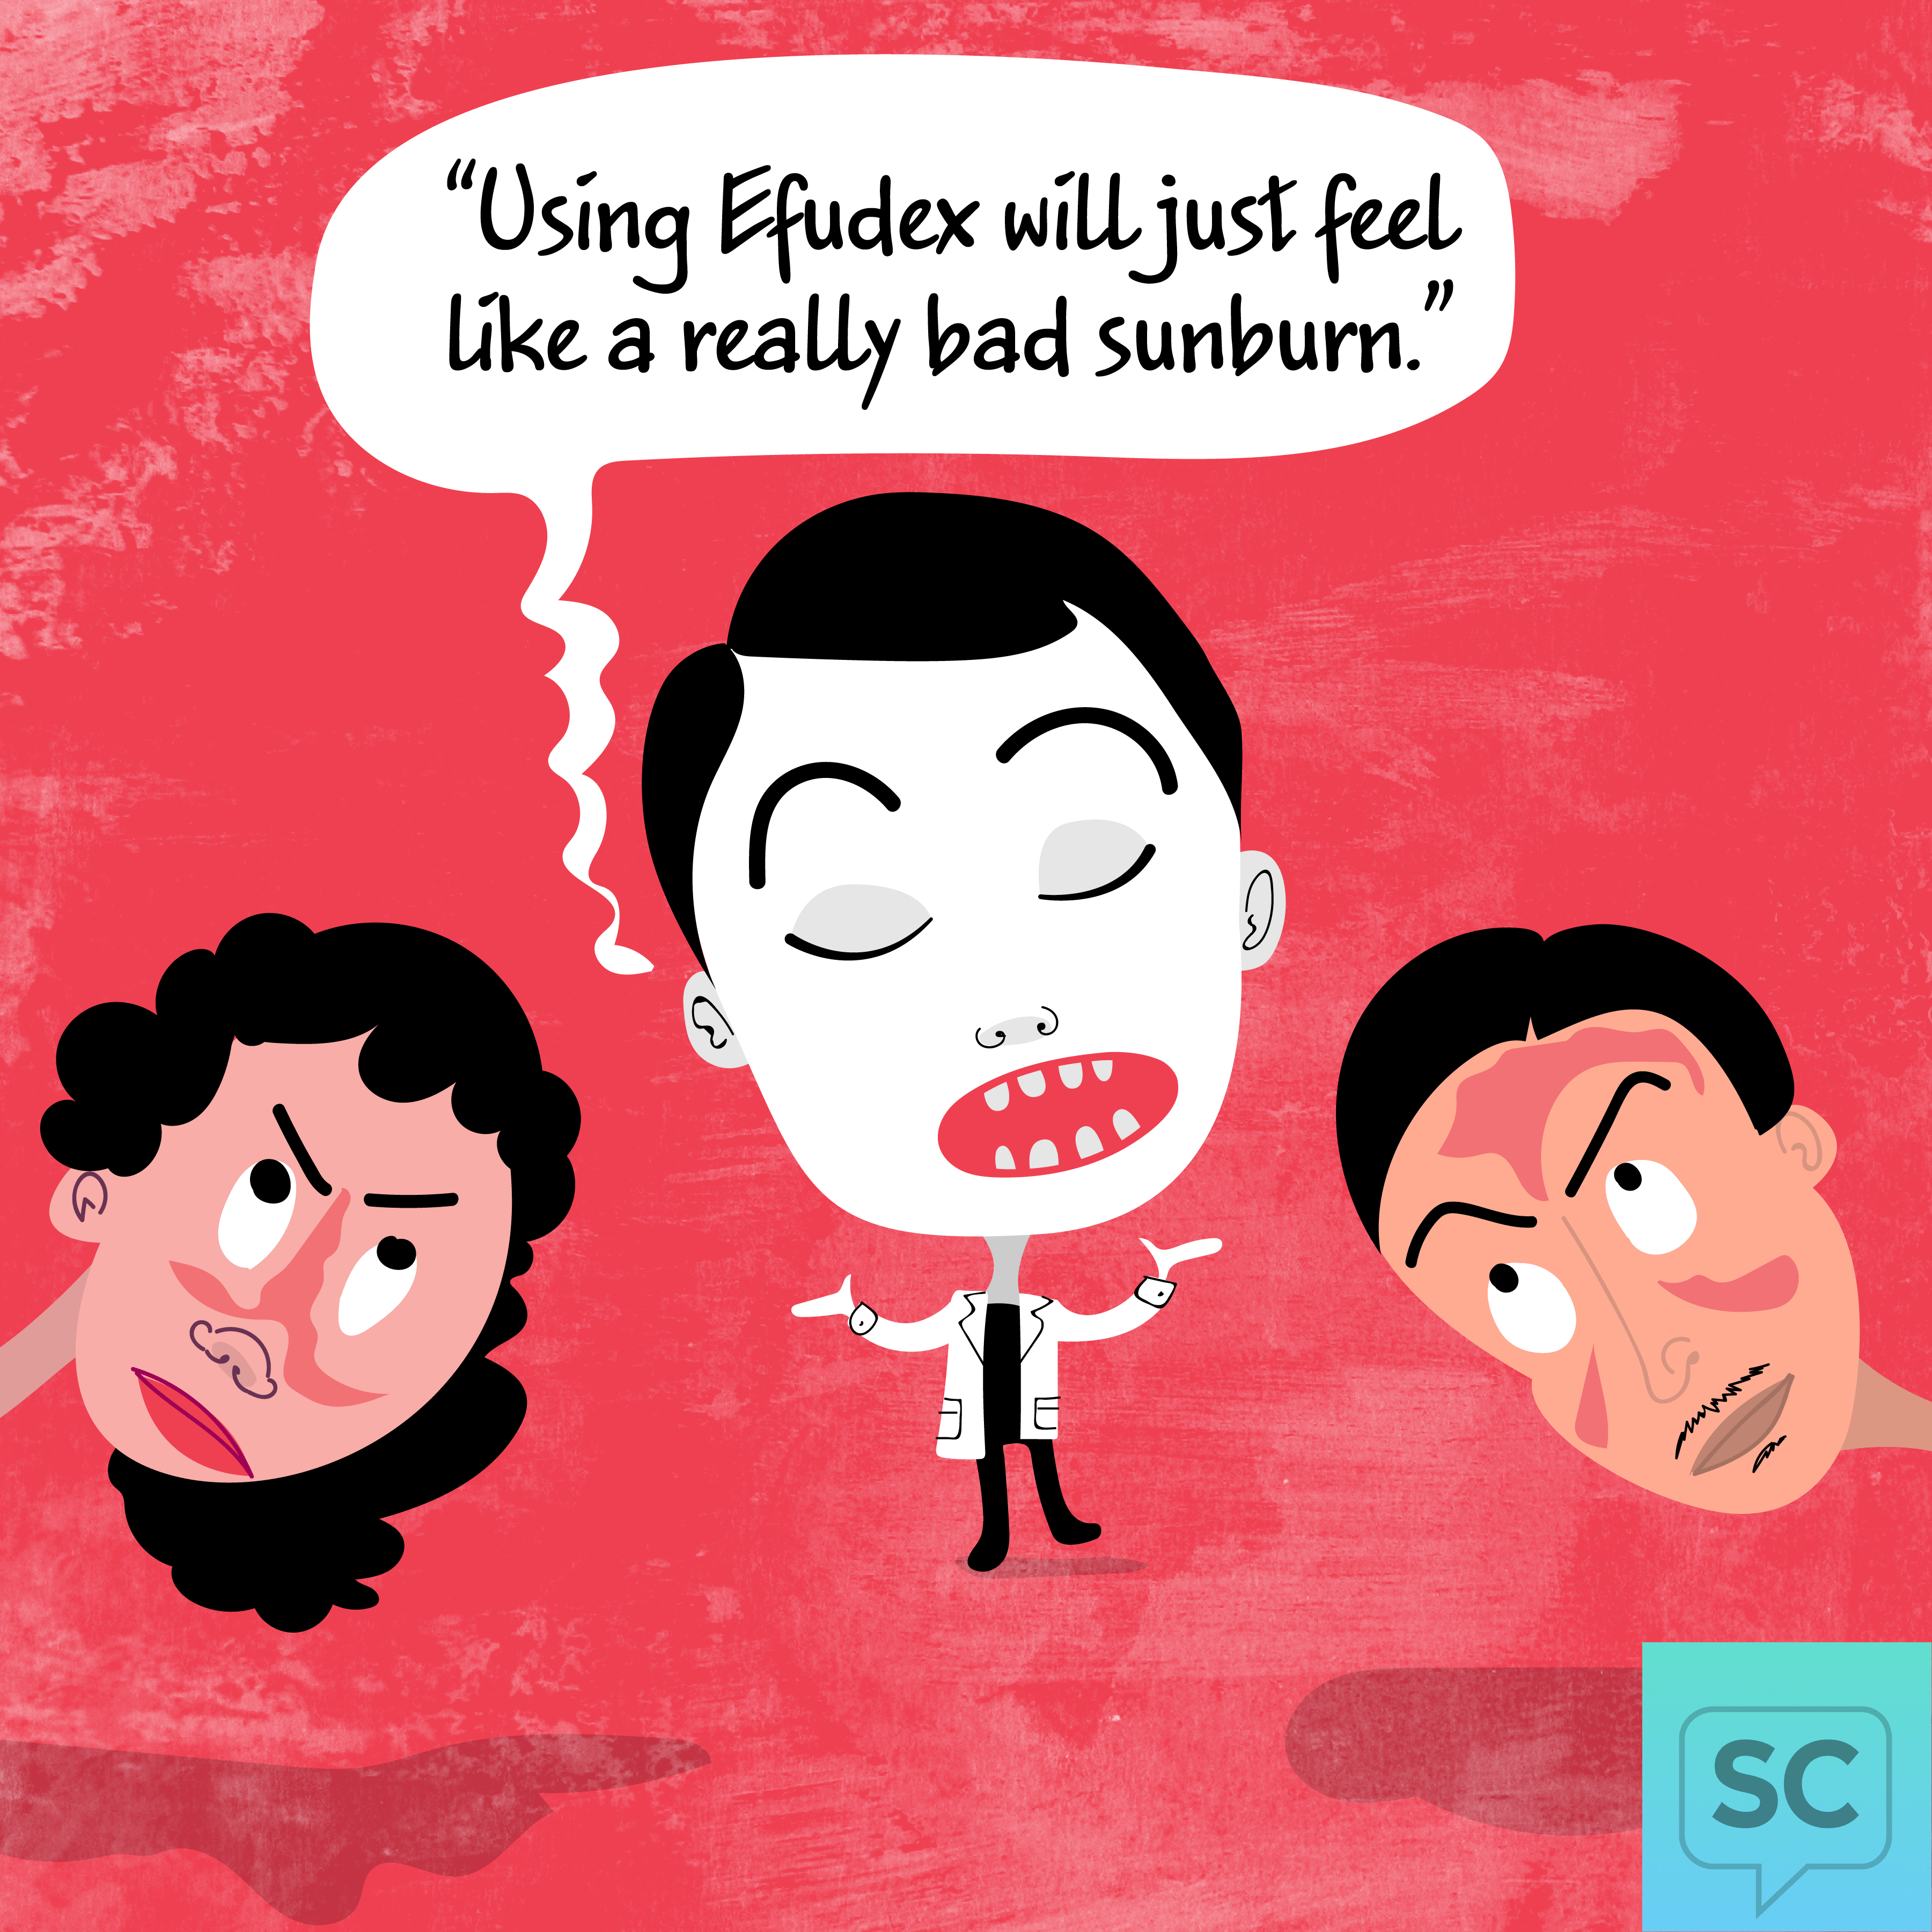 A doctor says that using Efudex will feel like a bad sunburn